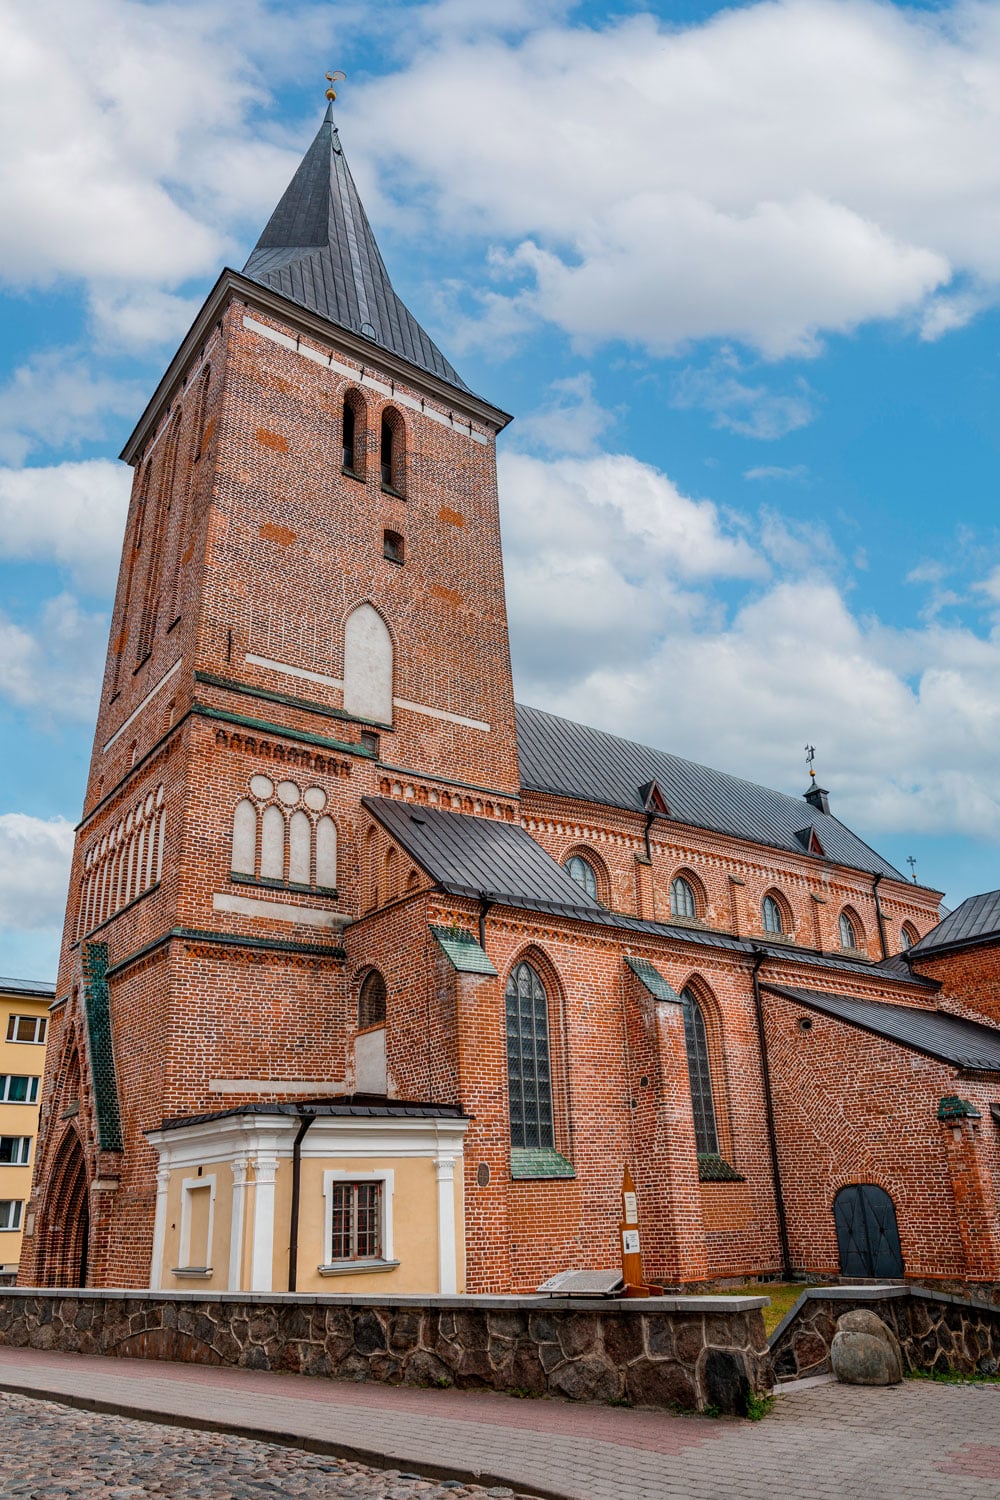 St. John's Church in Tartu, Estonia